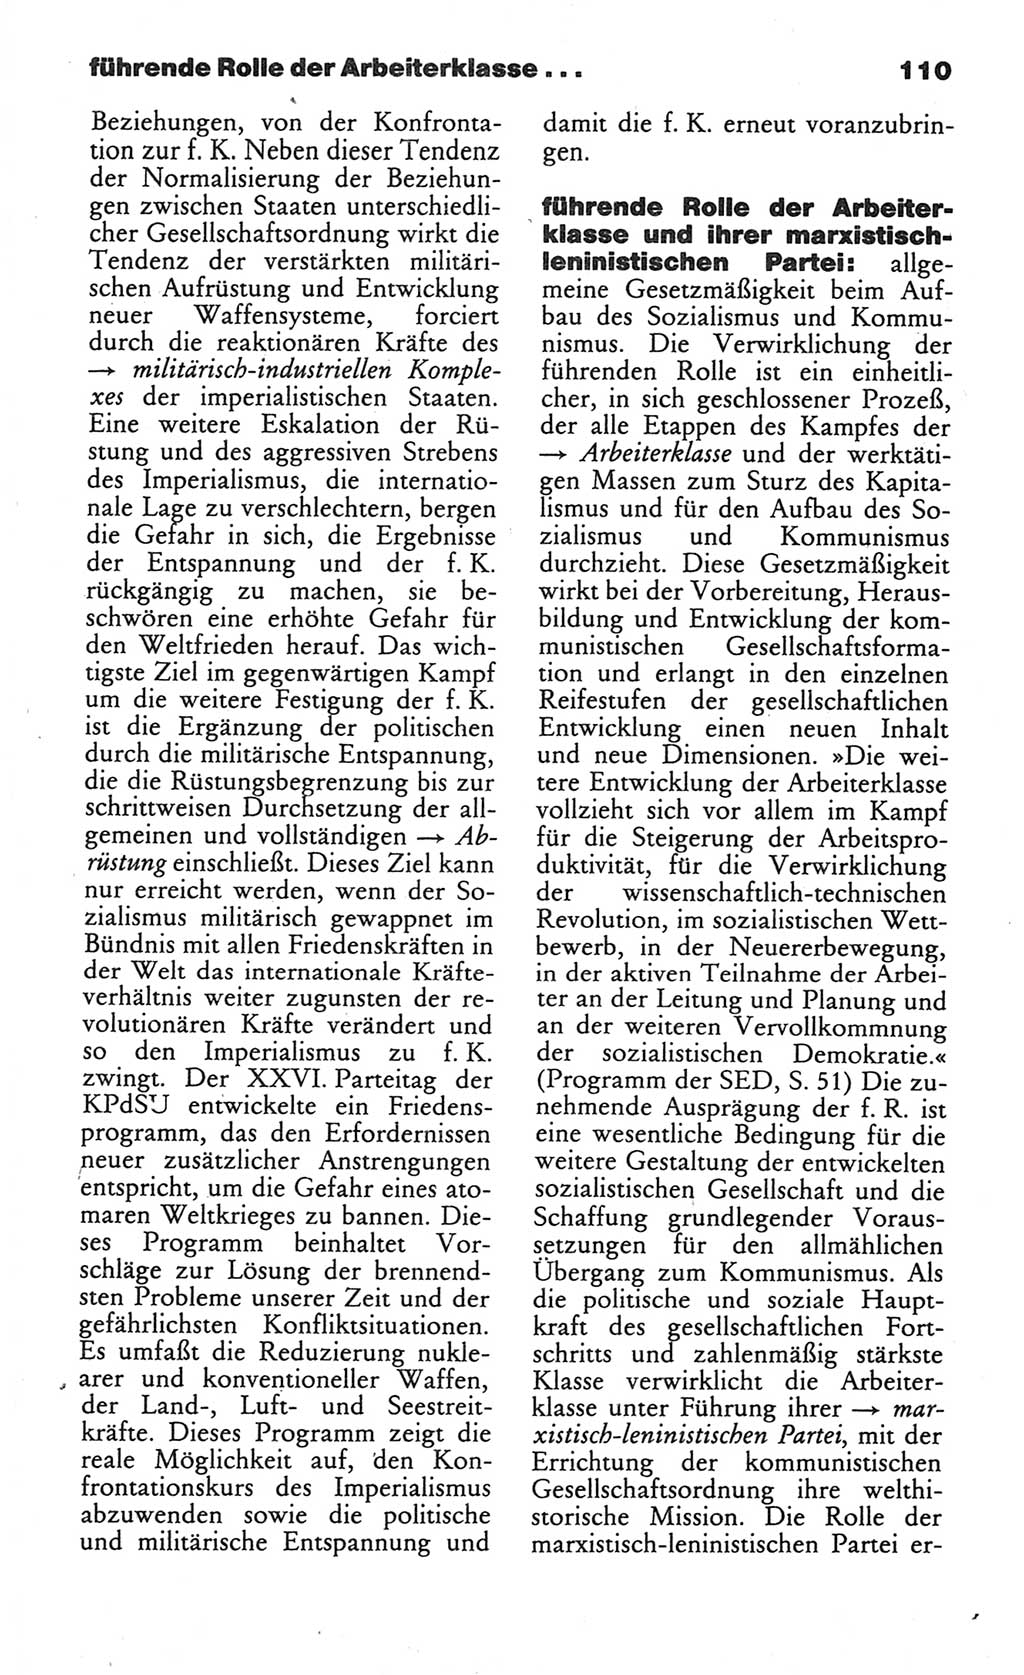 Wörterbuch des wissenschaftlichen Kommunismus [Deutsche Demokratische Republik (DDR)] 1984, Seite 110 (Wb. wiss. Komm. DDR 1984, S. 110)